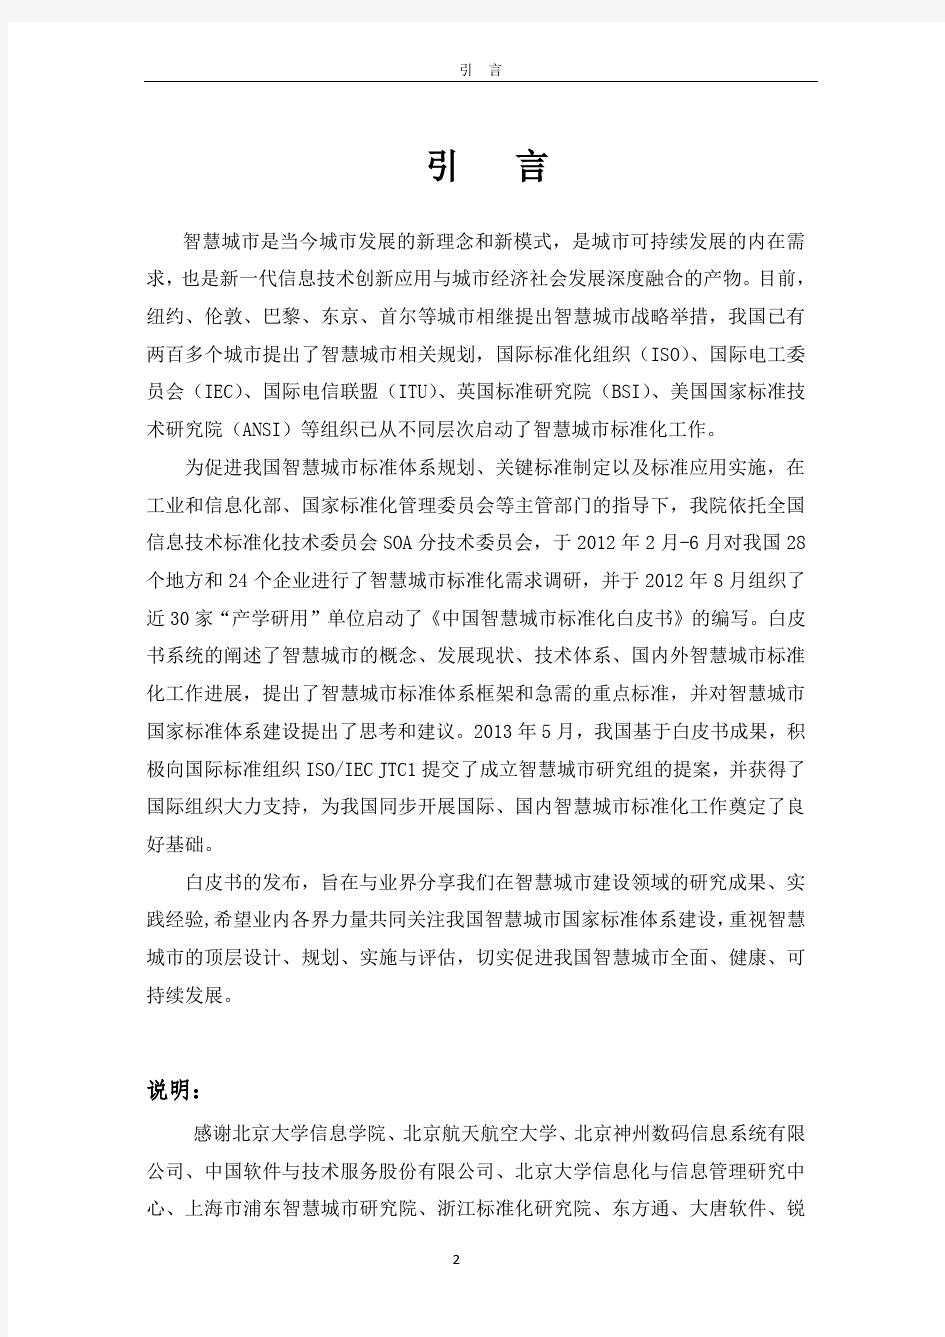 中国智慧城市标准化白皮书-中国电子技术标准化研究院